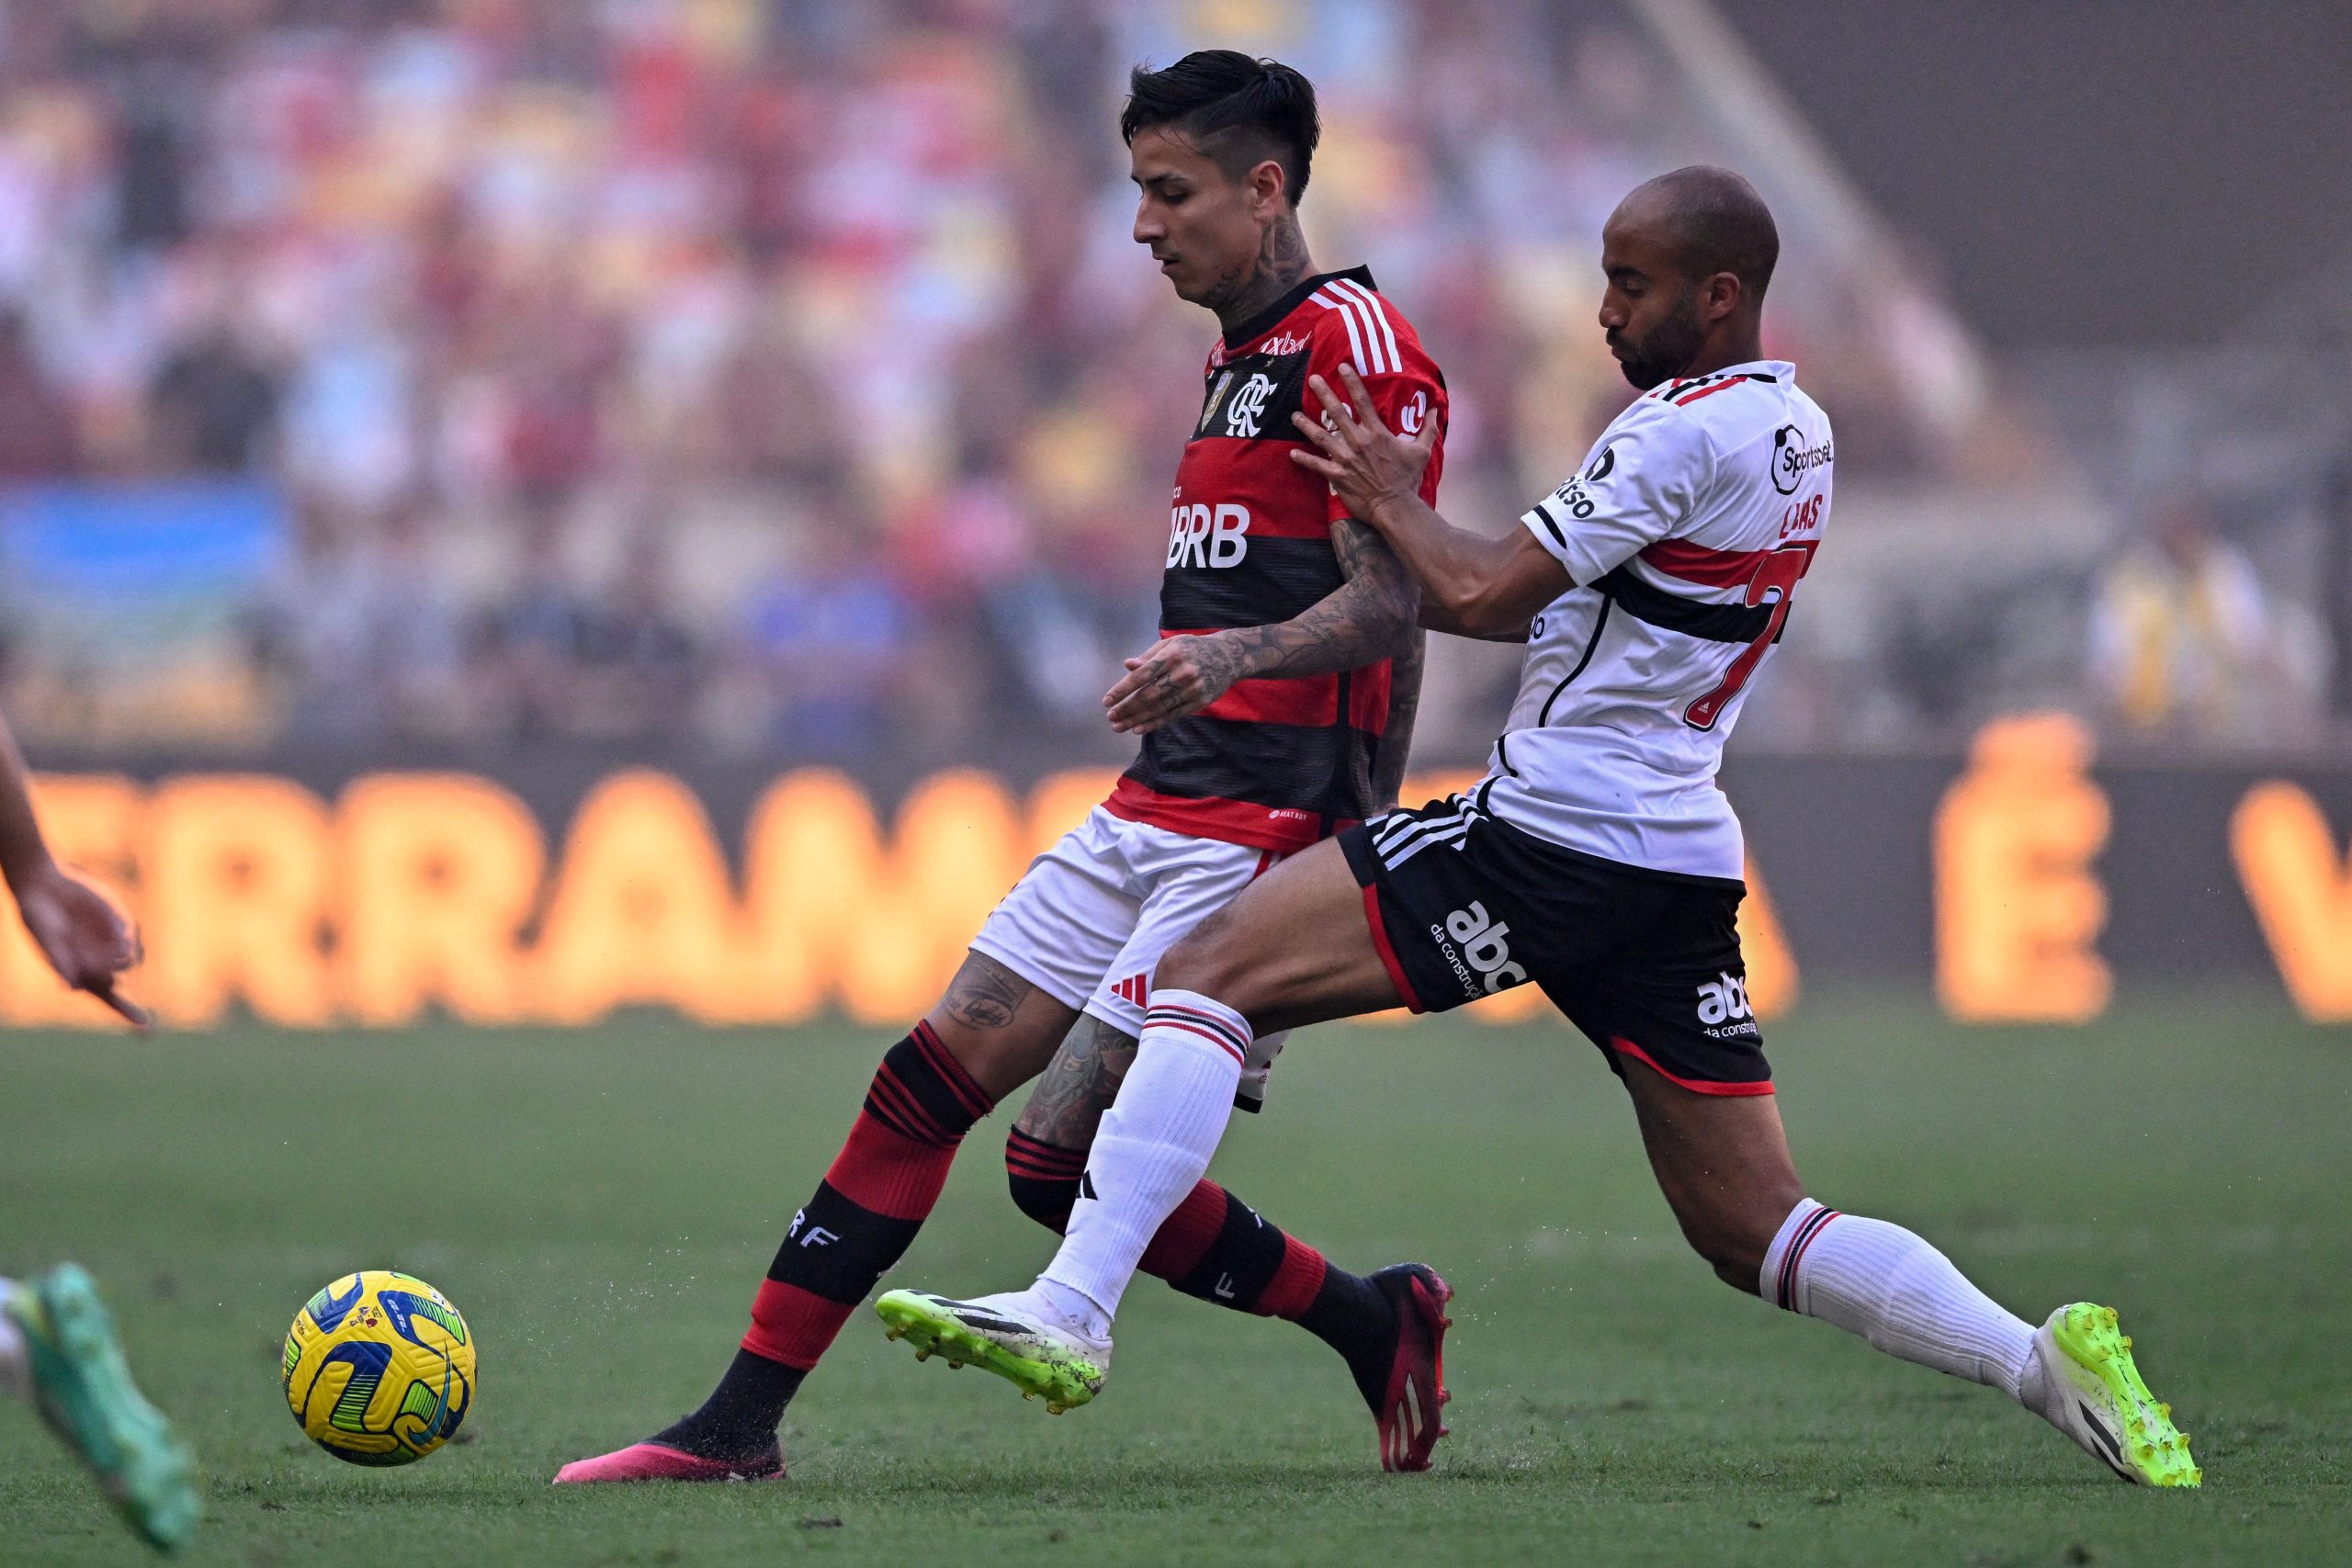 Flamengo 0 x 1 São Paulo: veja como foi o primeiro duelo da final